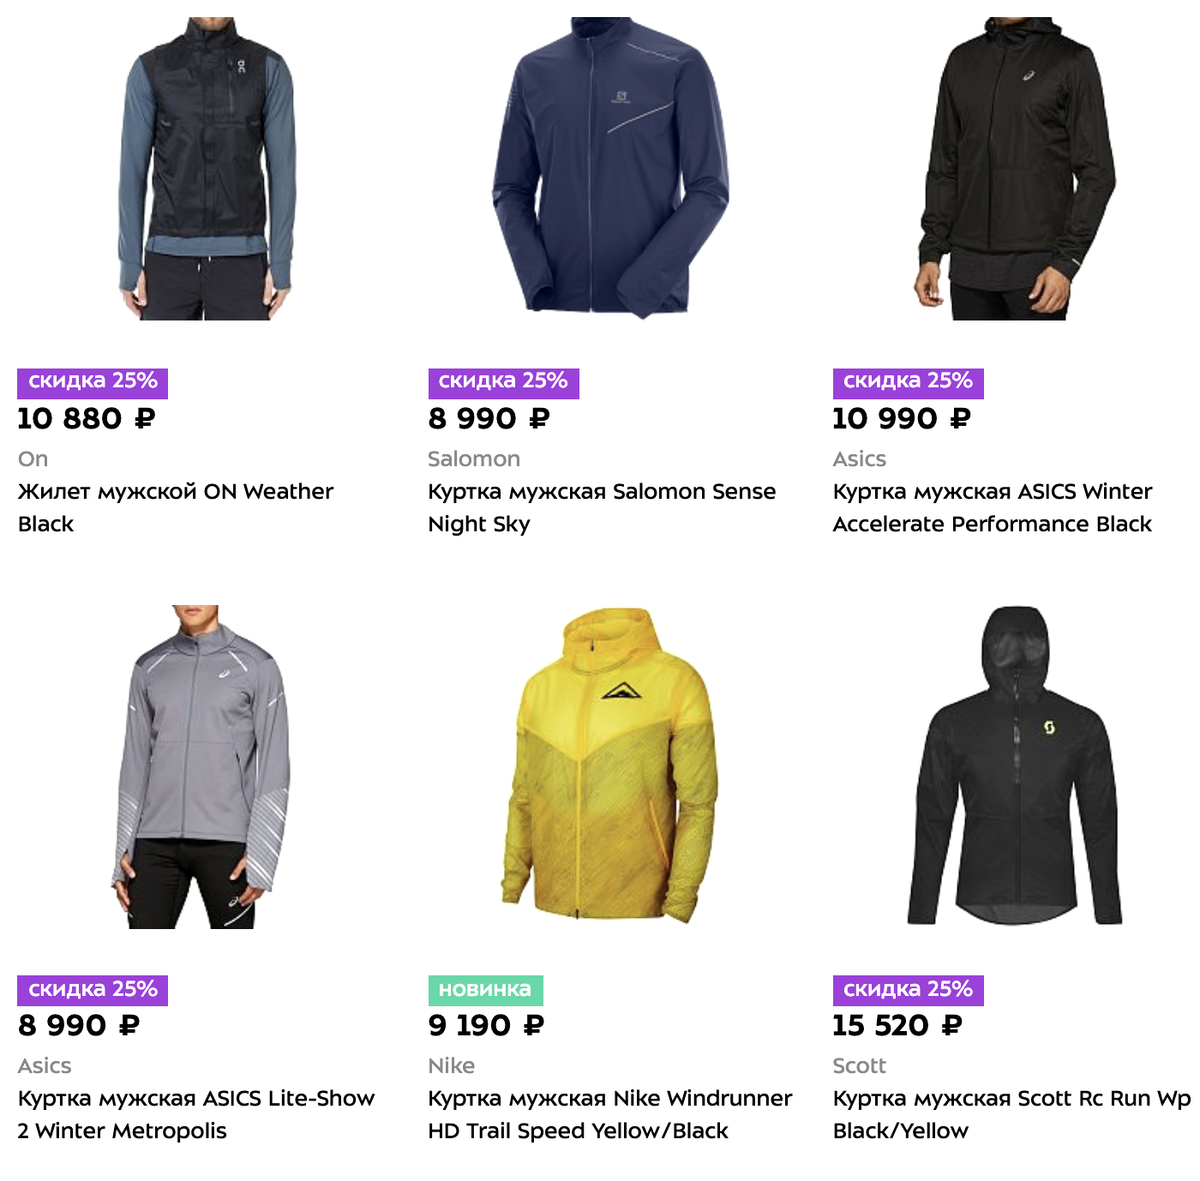 Цены на водонепроницаемые беговые куртки в магазине «Спорт-марафон». Они точно защитят от ветра и дождя. Но и стоят дорого